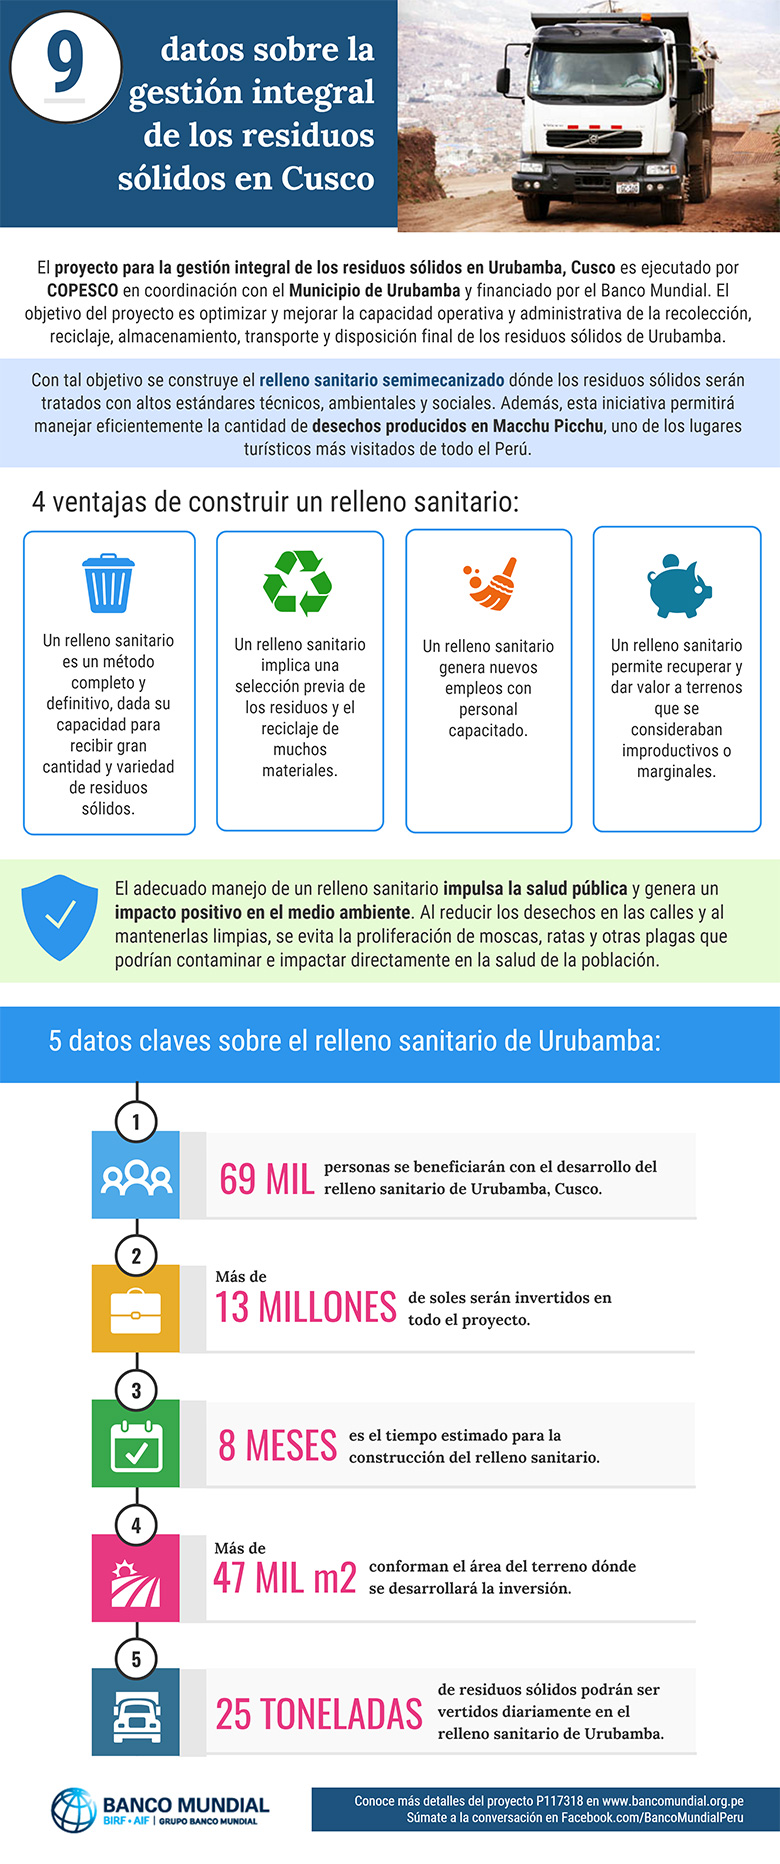 Infografía sobre el relleno sanitario semimecanizado de Urubamba, Cusco.